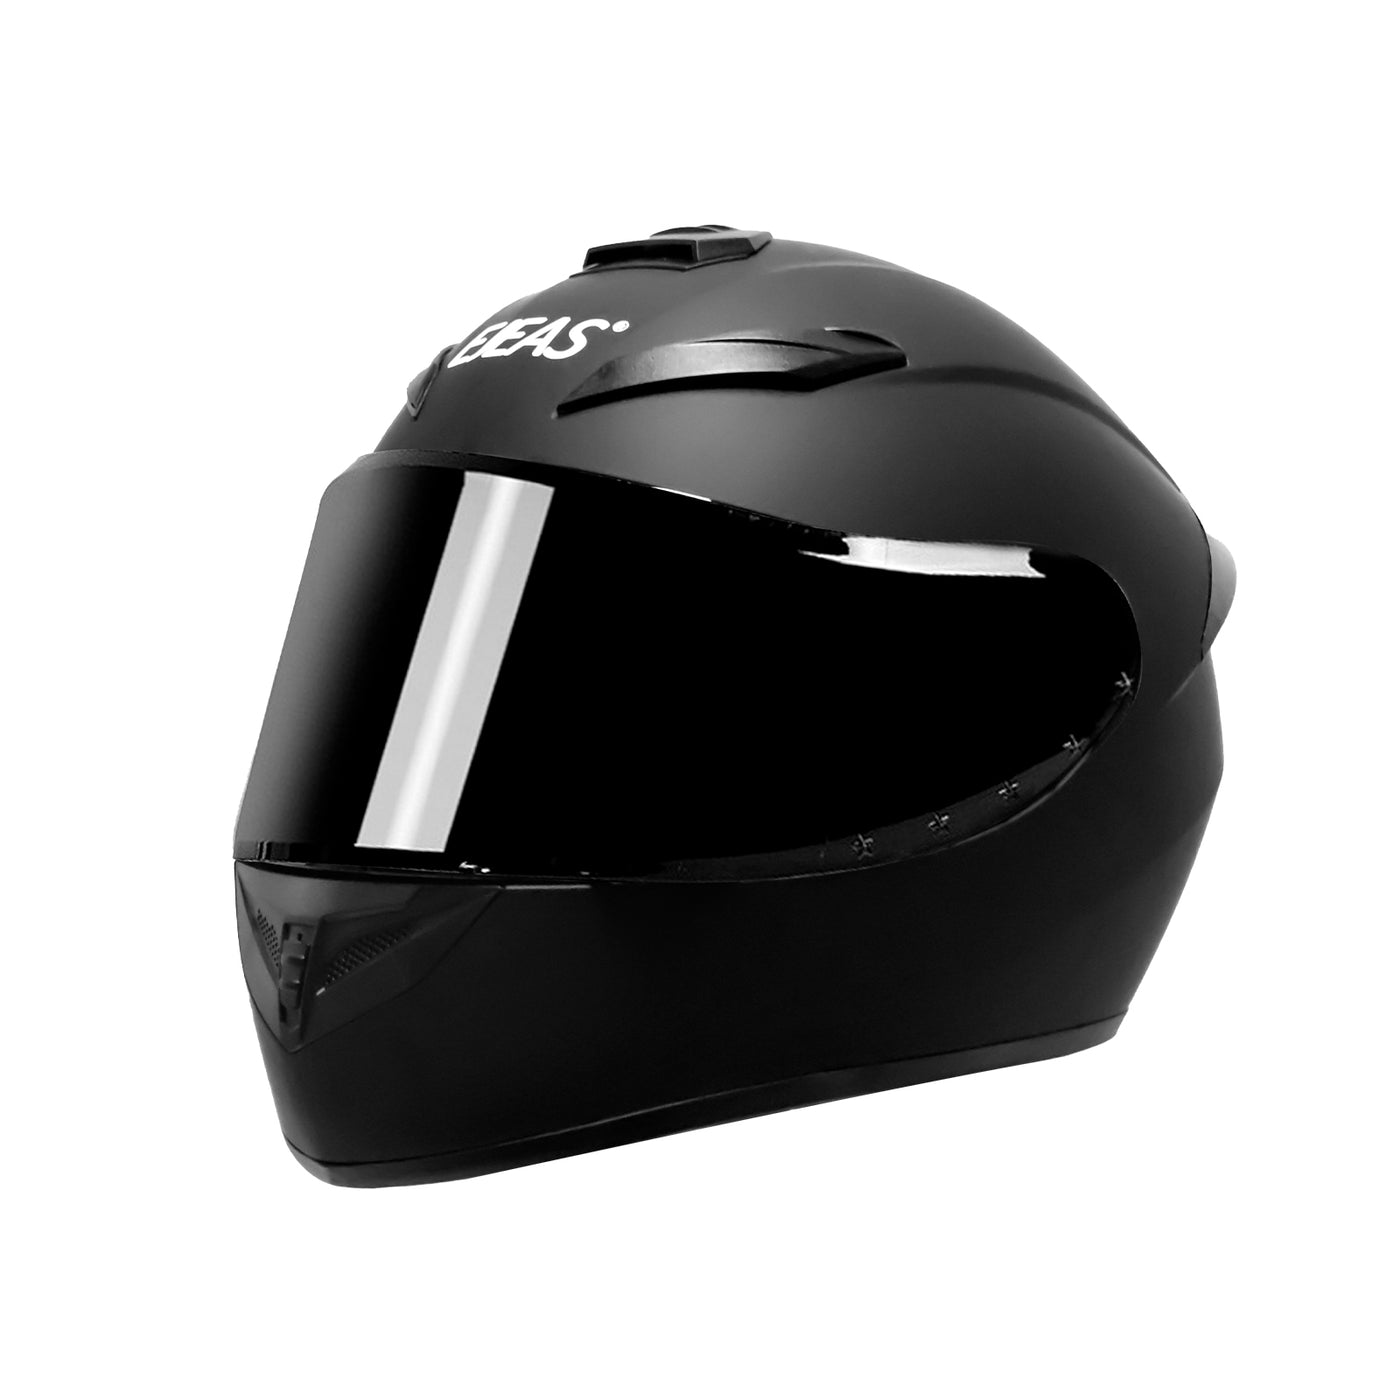 EJEAS AiH1 Smart Motorcycle Helmet